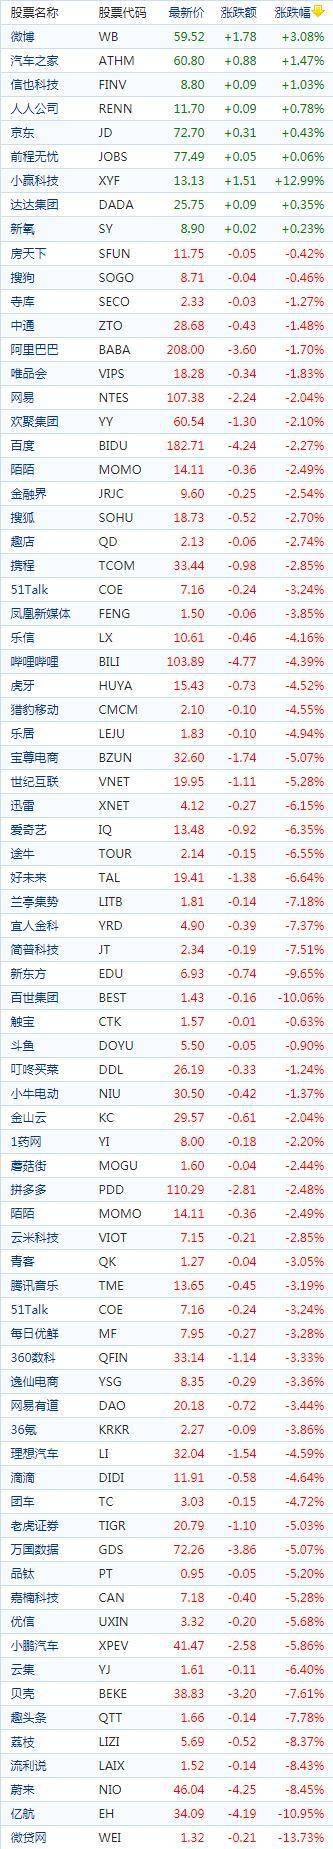 中国概念股周三收盘普遍下跌 京东上涨0.43%报收72.70美元